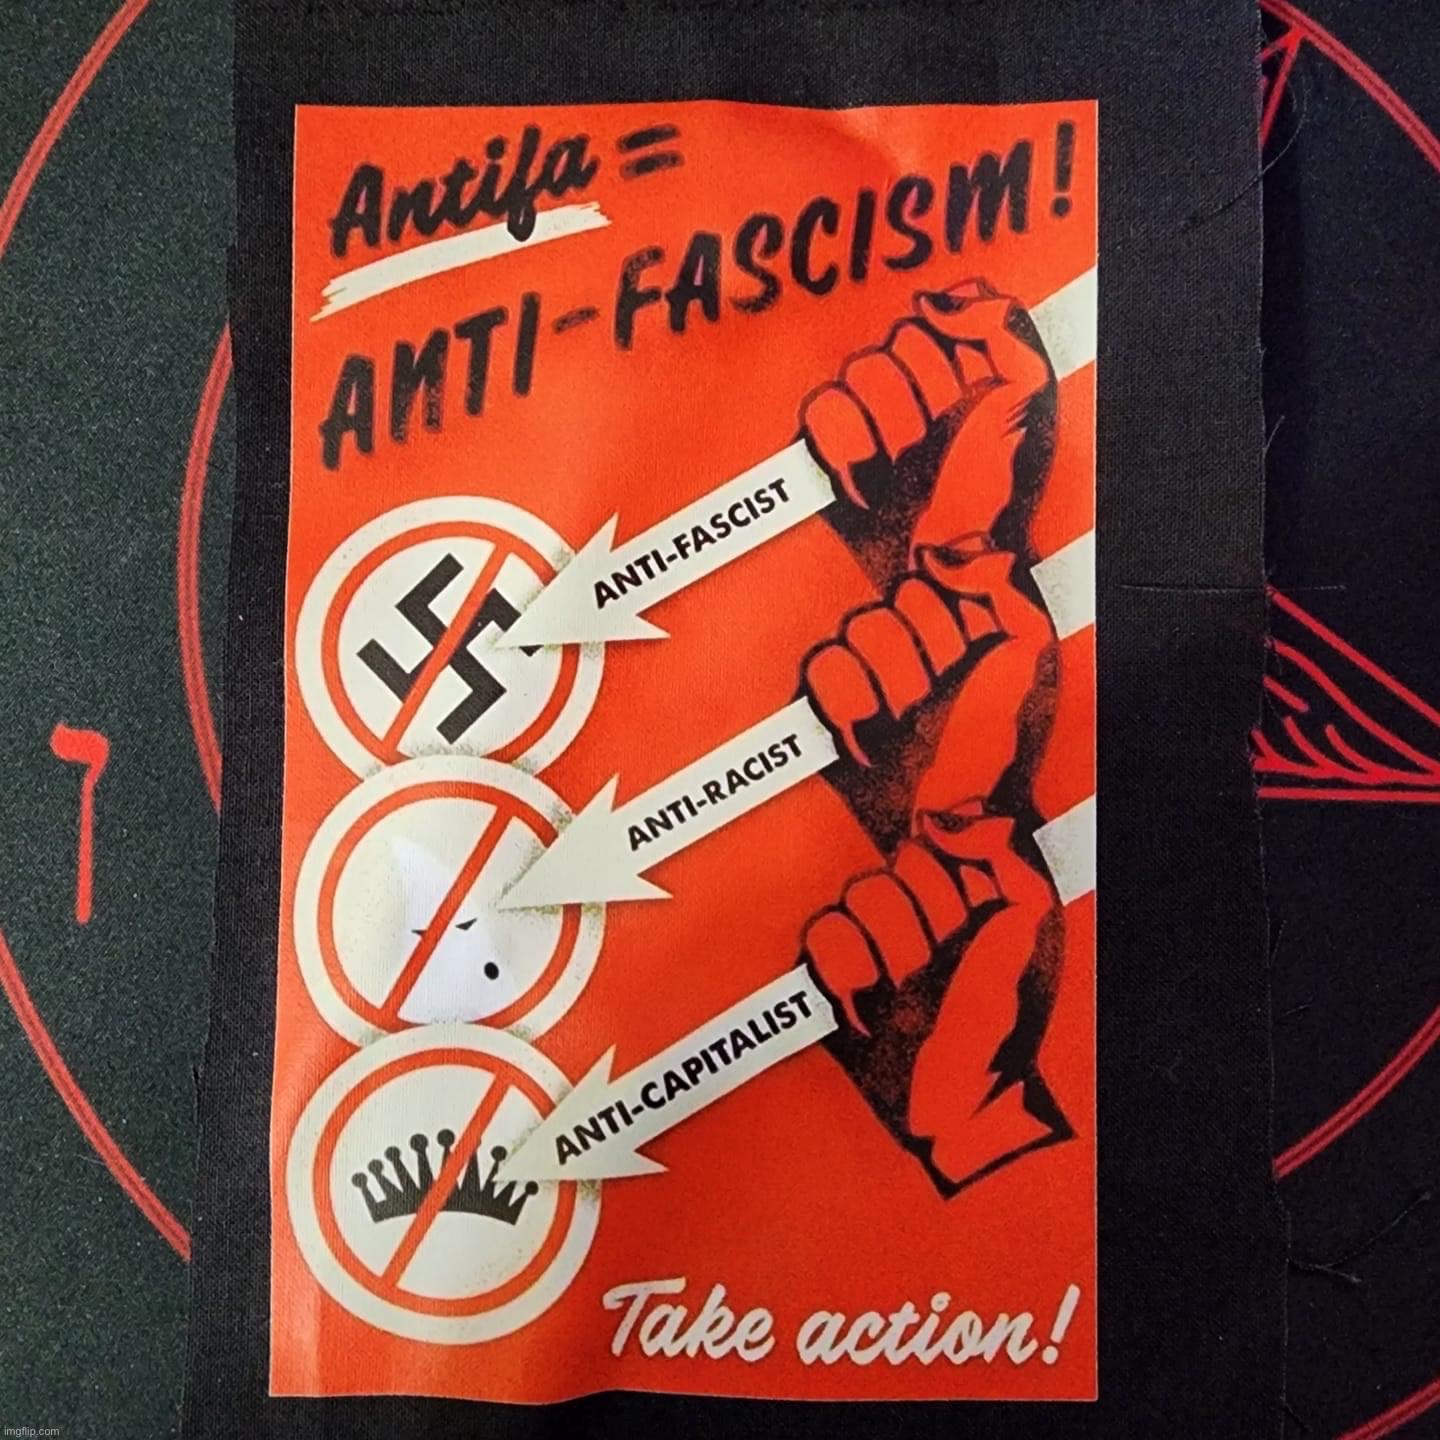 Antifa anti-fascism | image tagged in antifa anti-fascism | made w/ Imgflip meme maker